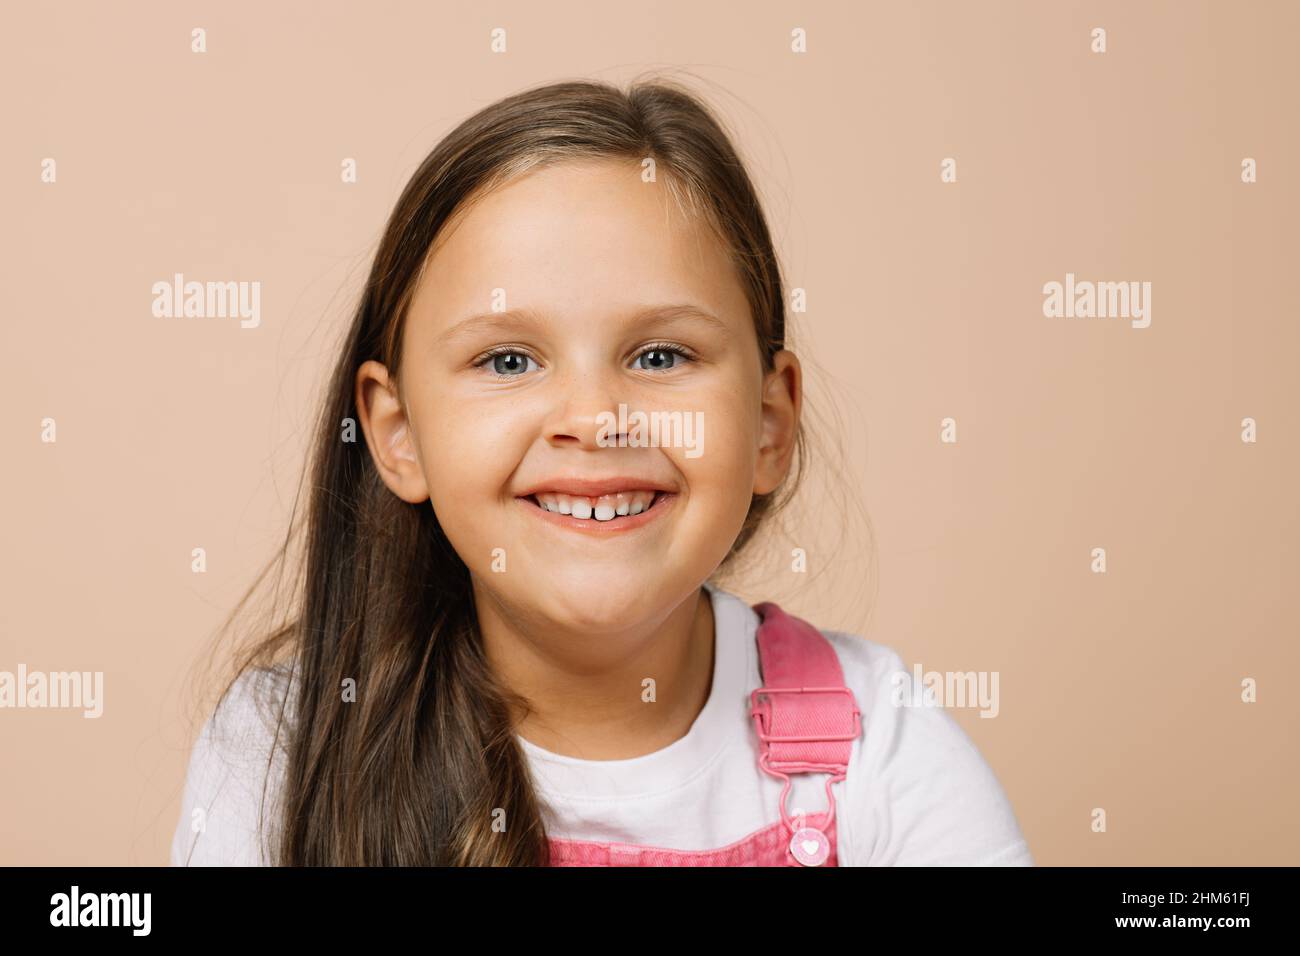 Portrait de l'enfant avec des yeux brillants et un sourire heureux excité avec les dents supérieures regardant l'appareil photo portant une combinaison rose vif et un t-shirt blanc Banque D'Images